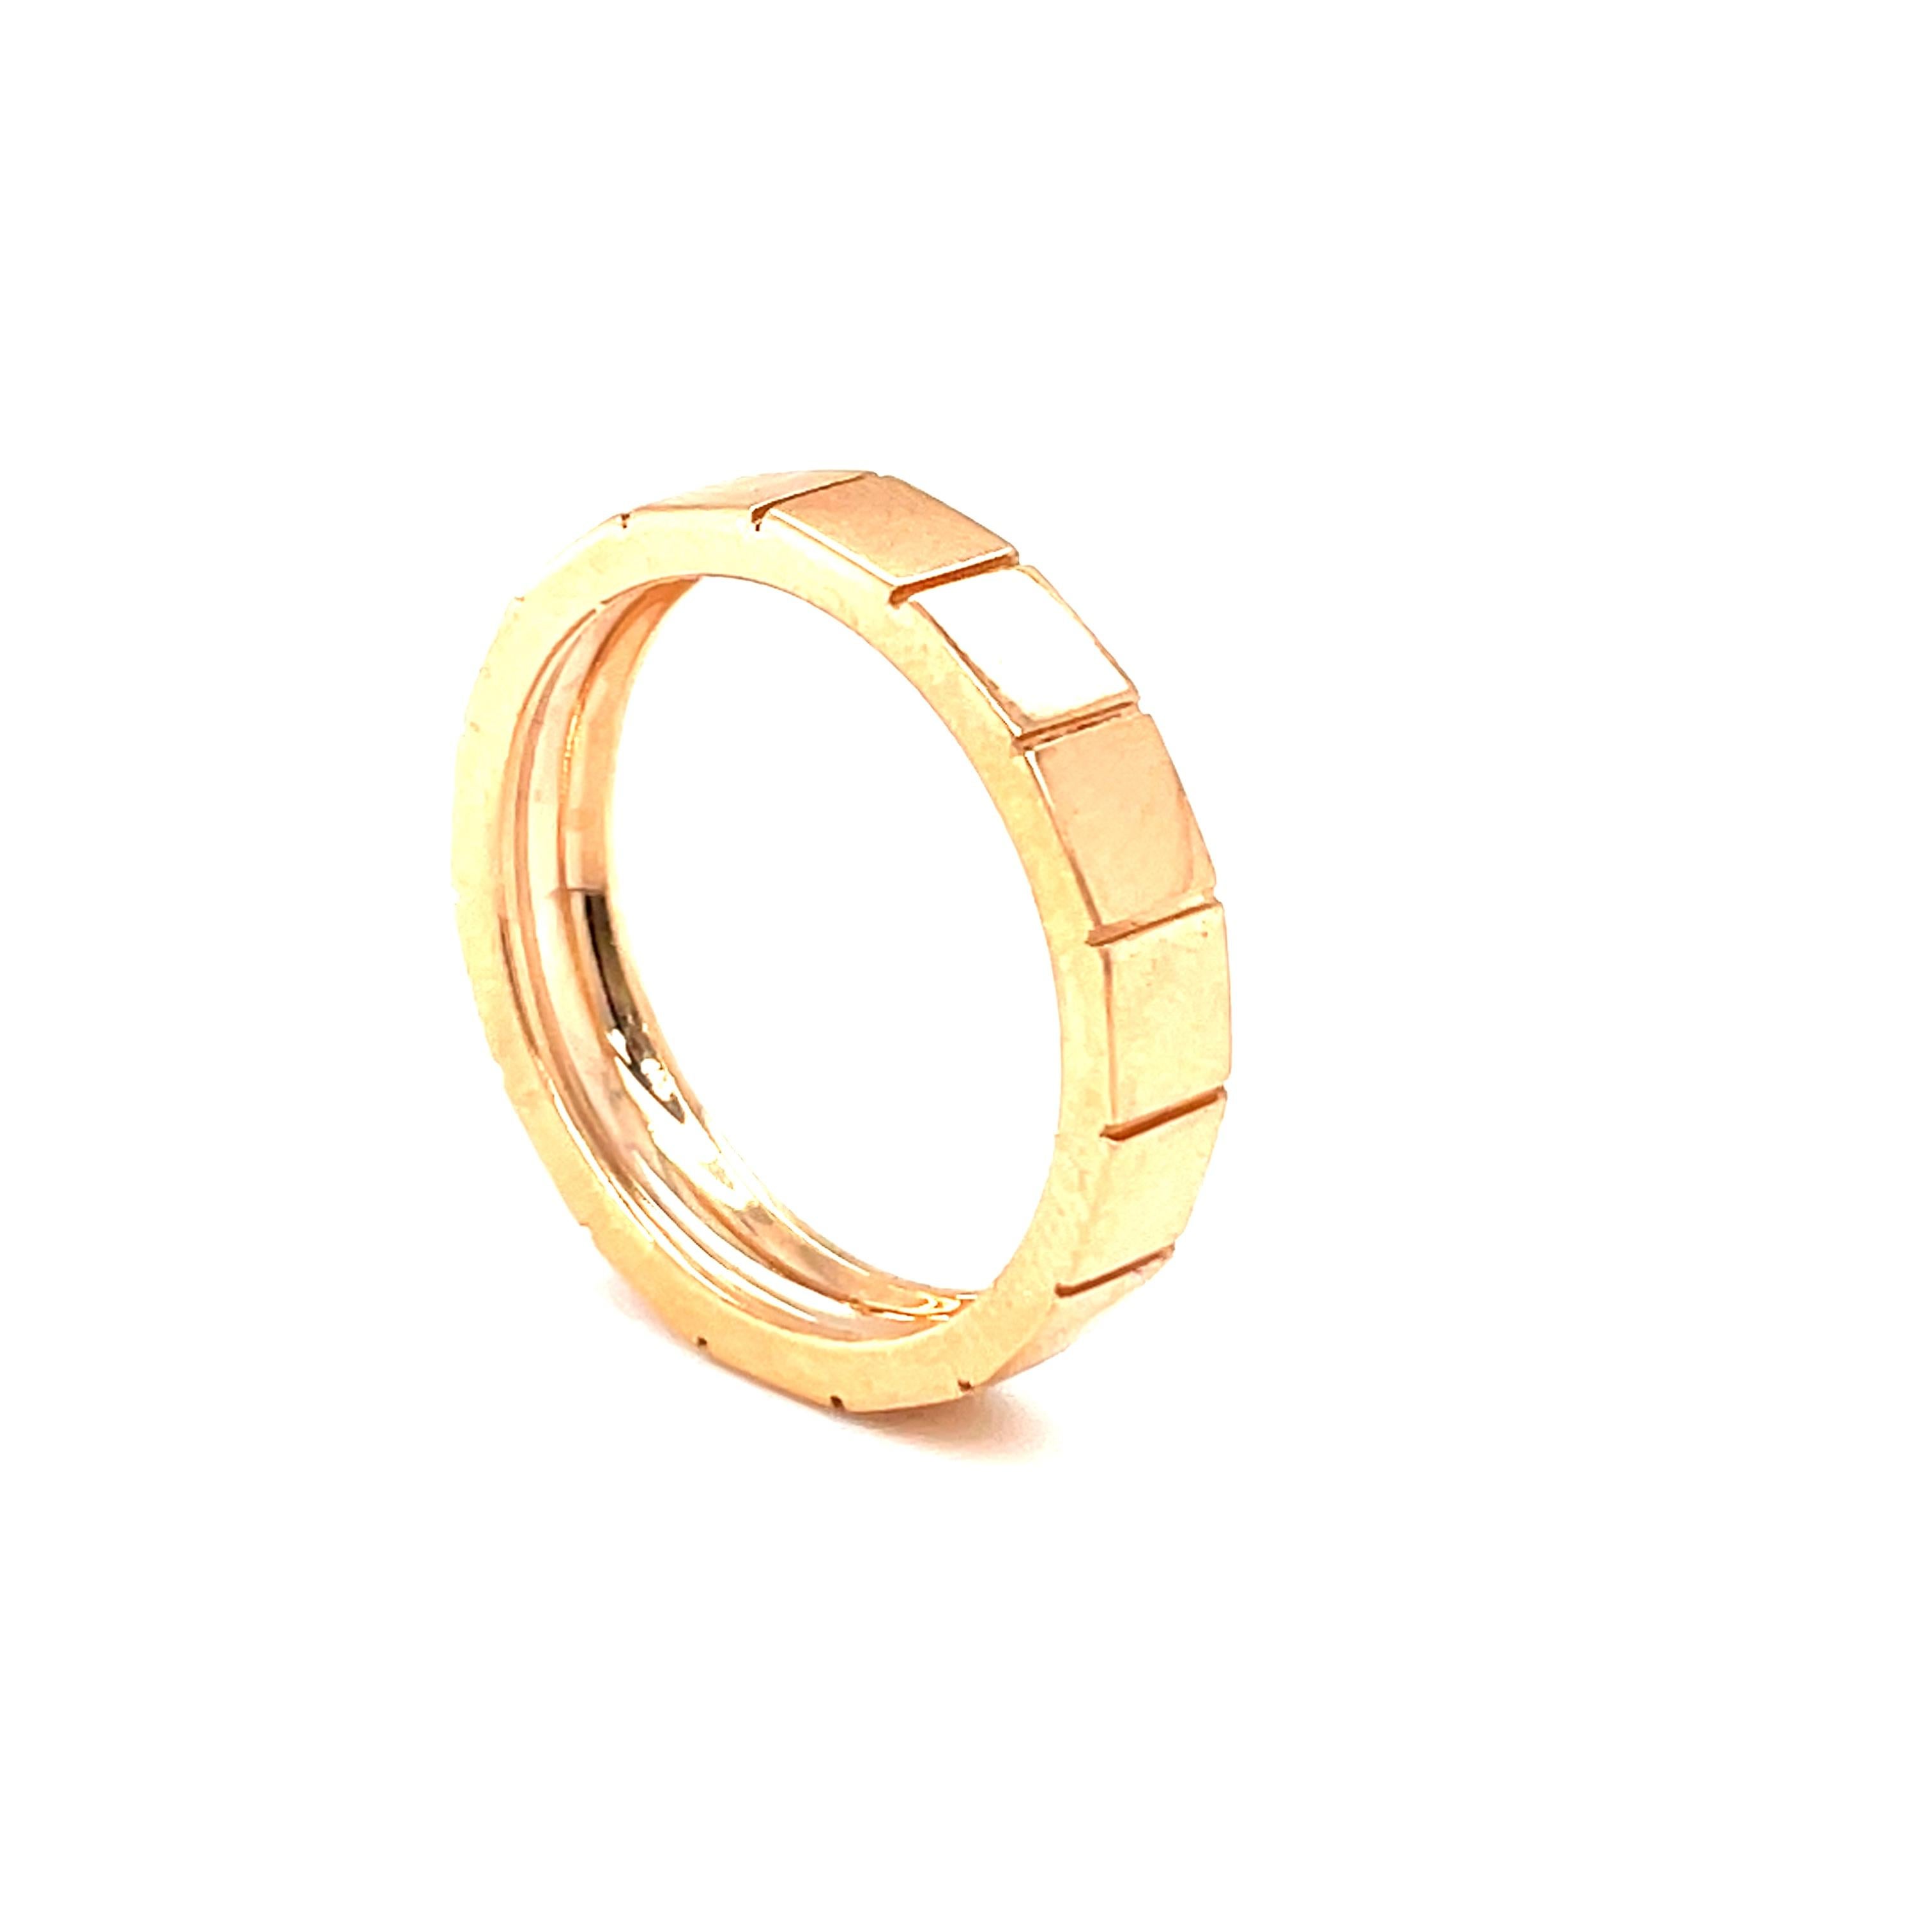 der Ring aus 18 Karat Roségold ist von Damier Collection. Dieser schön verzierte Ring ist 3 mm breit. Das Gesamtgewicht des Metalls beträgt 3 g. Tolle Wahl für die Hochzeit! 

Damier präsentiert einzigartige Schmuckstücke von herausragender Eleganz.